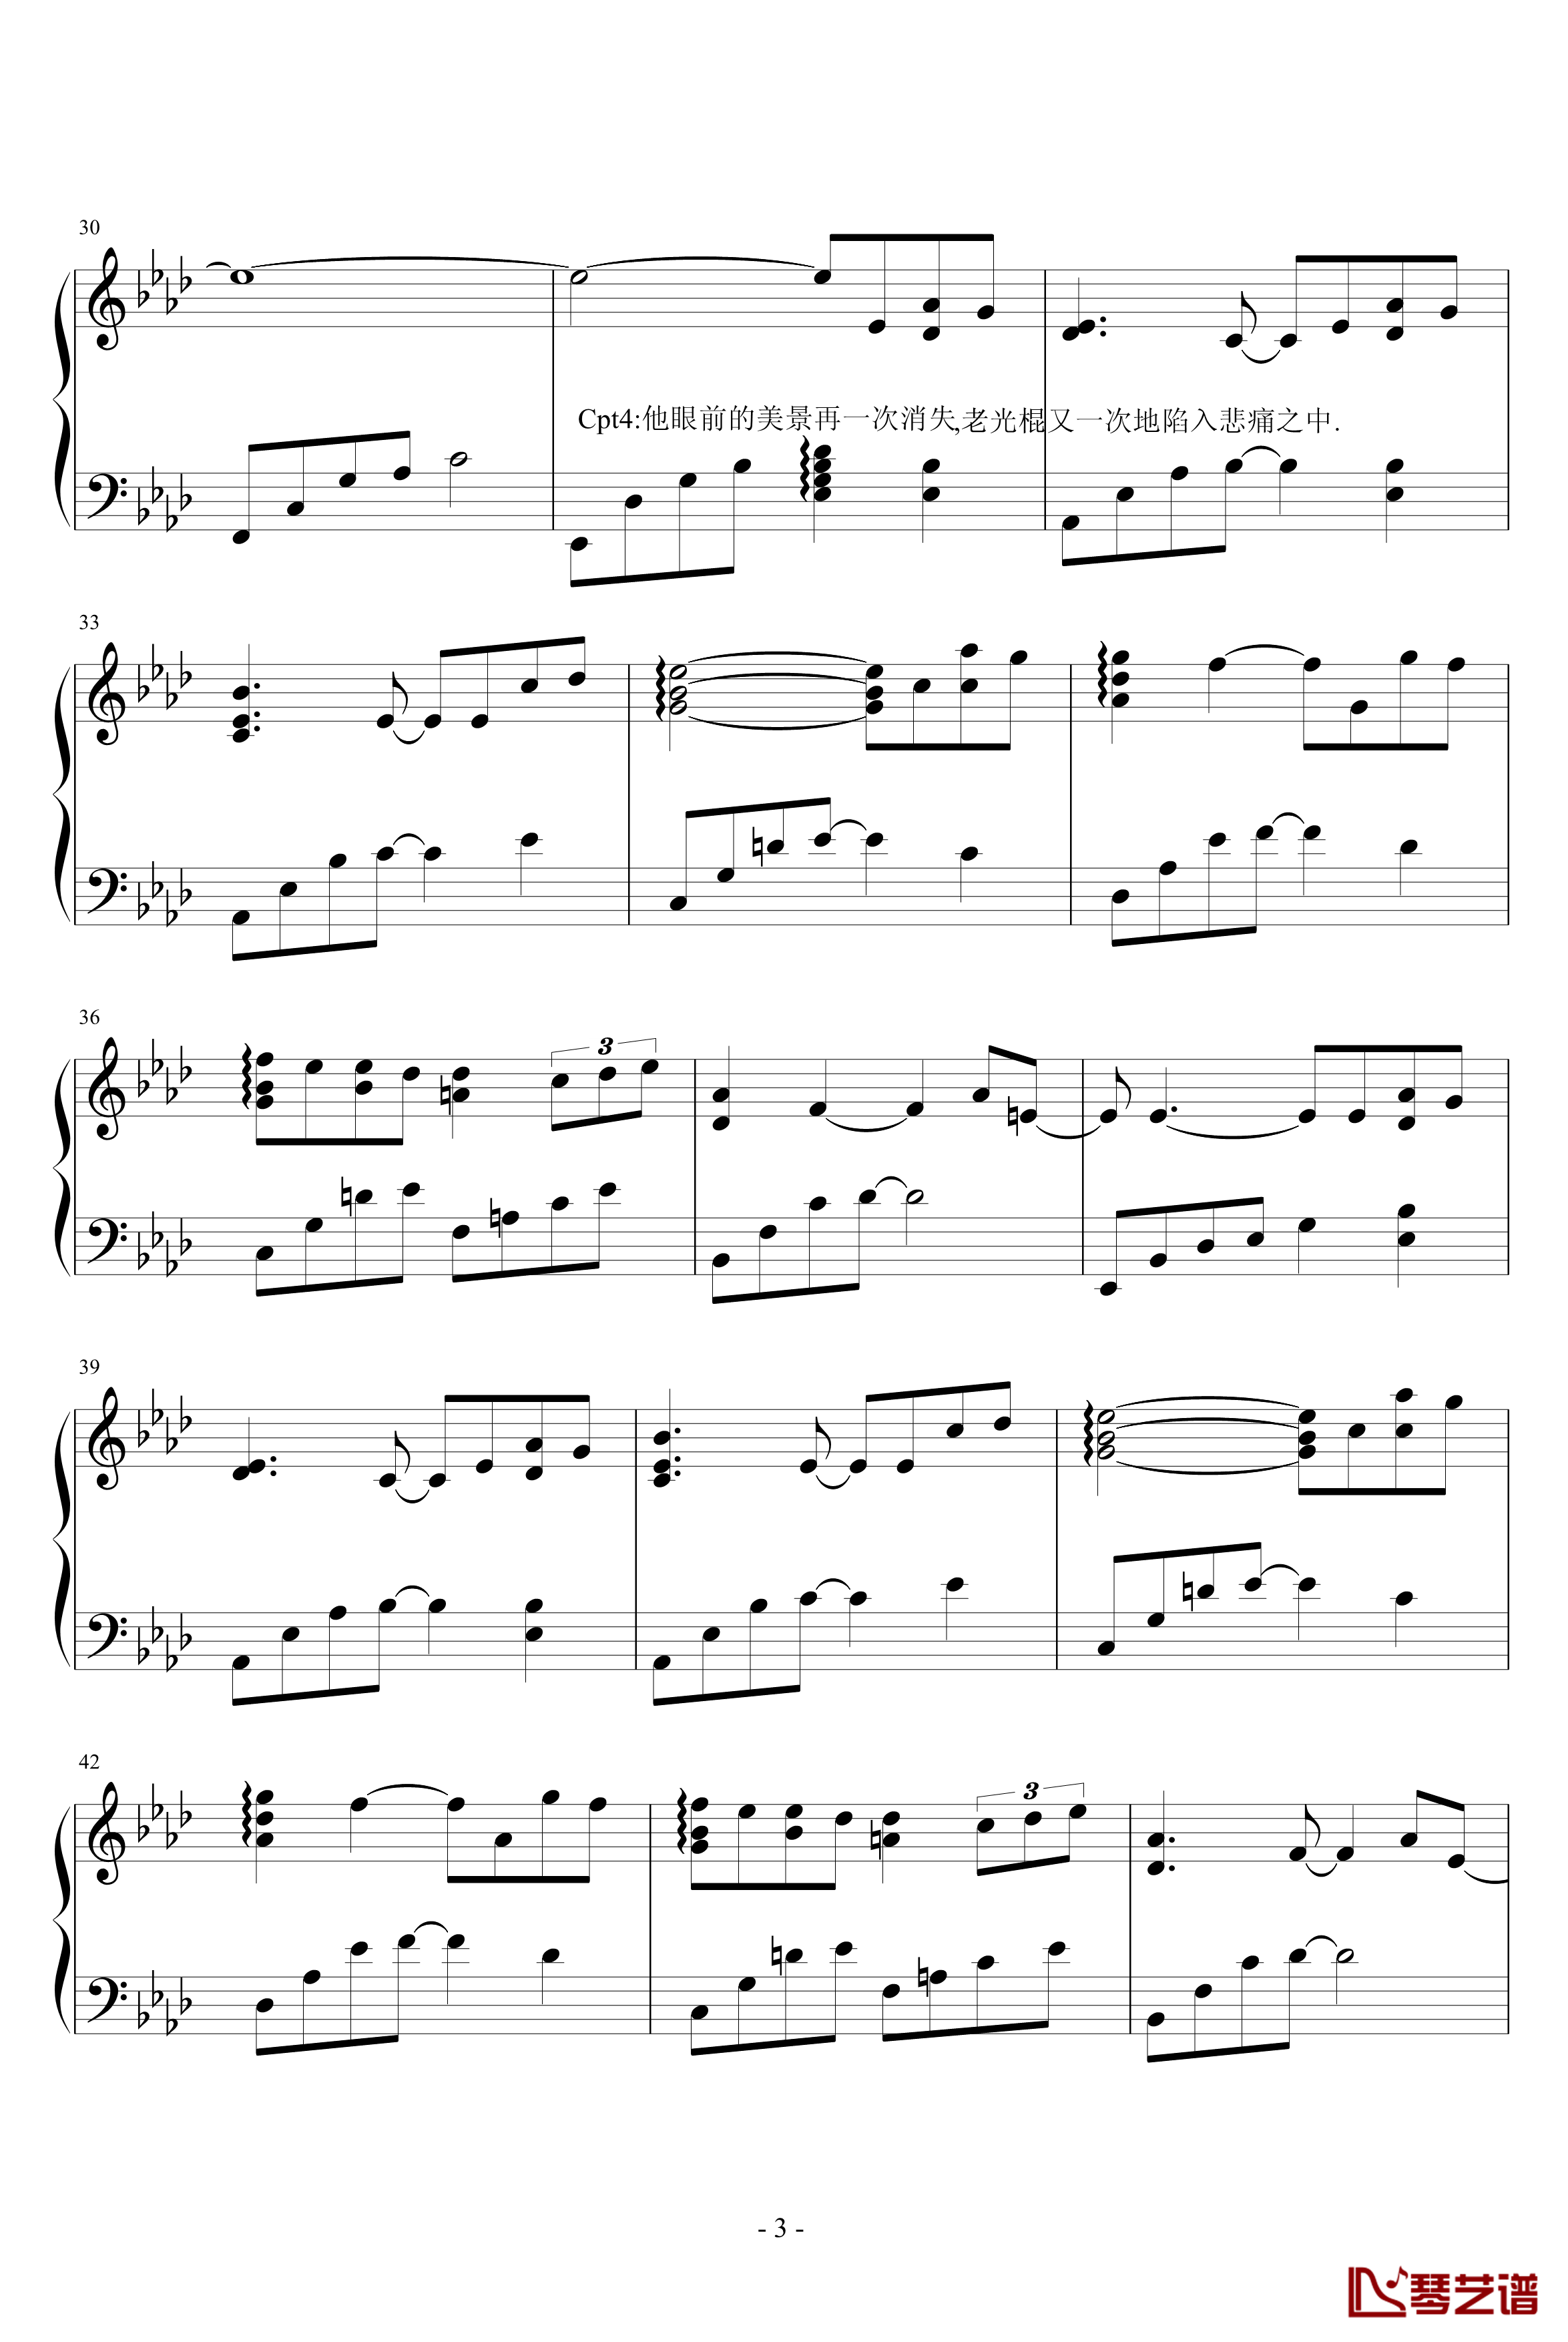 老光棍的愿钢琴谱-光棍组曲vol.2-钢琴叫兽3